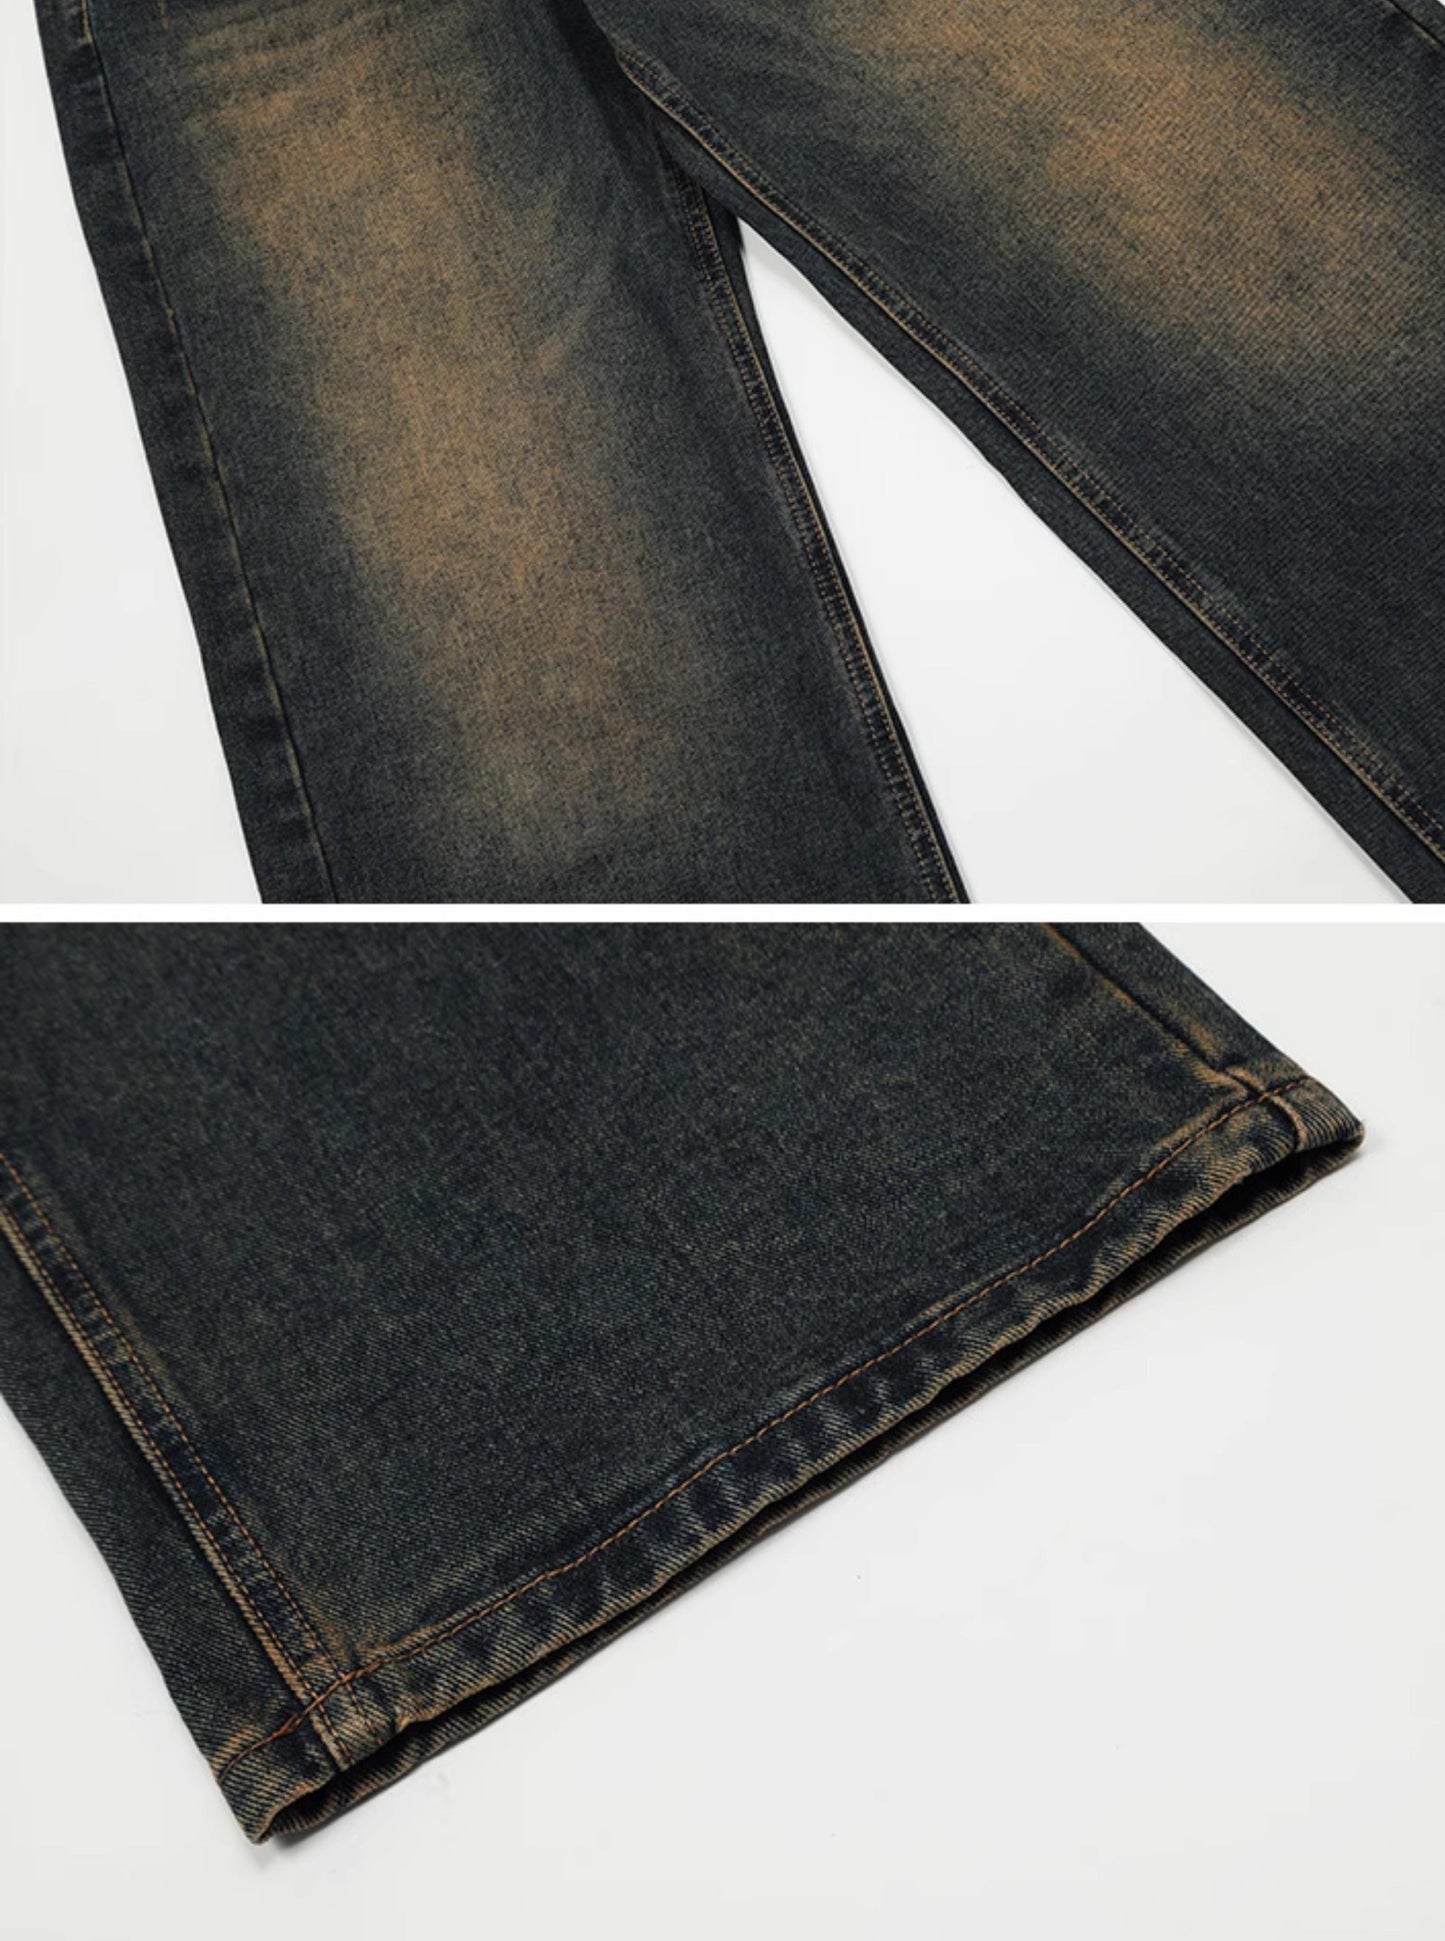 American Vintage Dark Jeans Pants